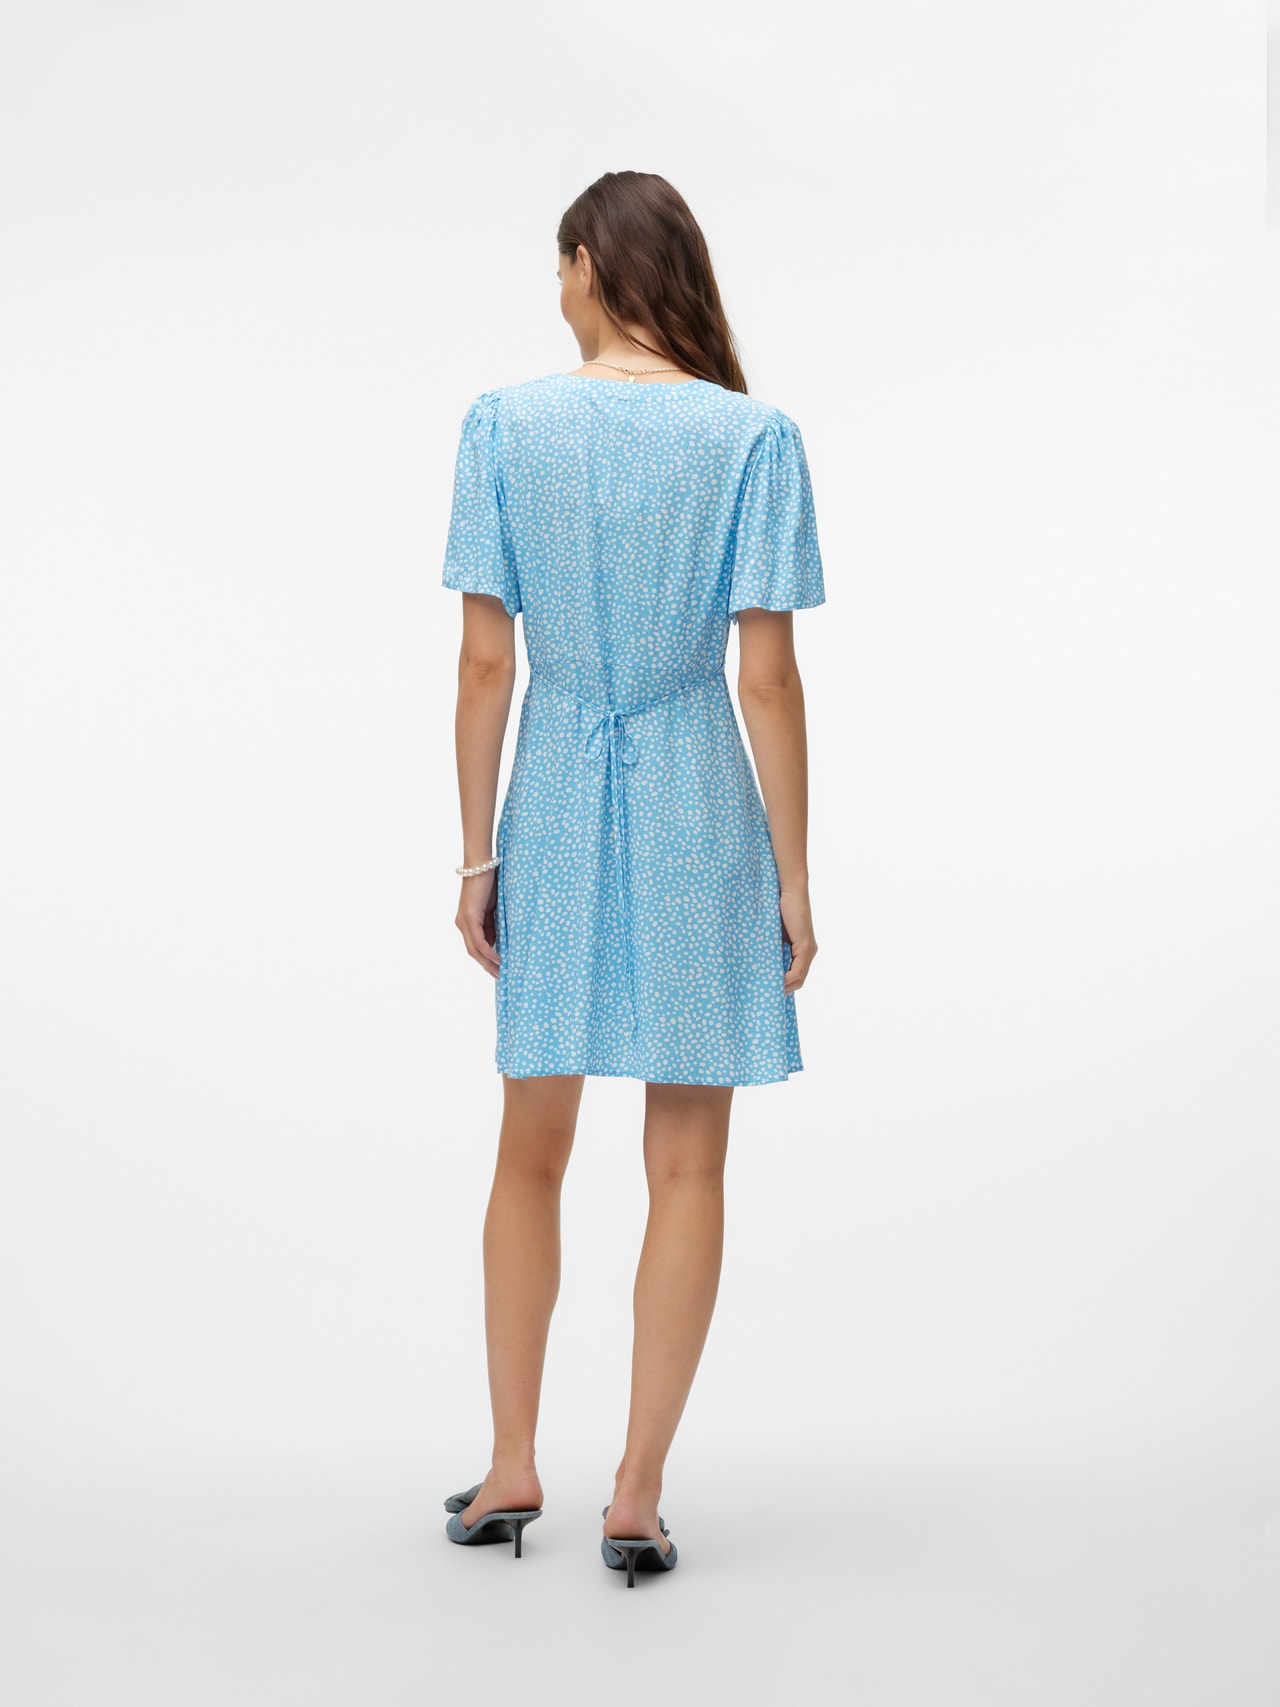 Vero Moda VMALBA Kort klänning -Bonnie Blue - 10292845